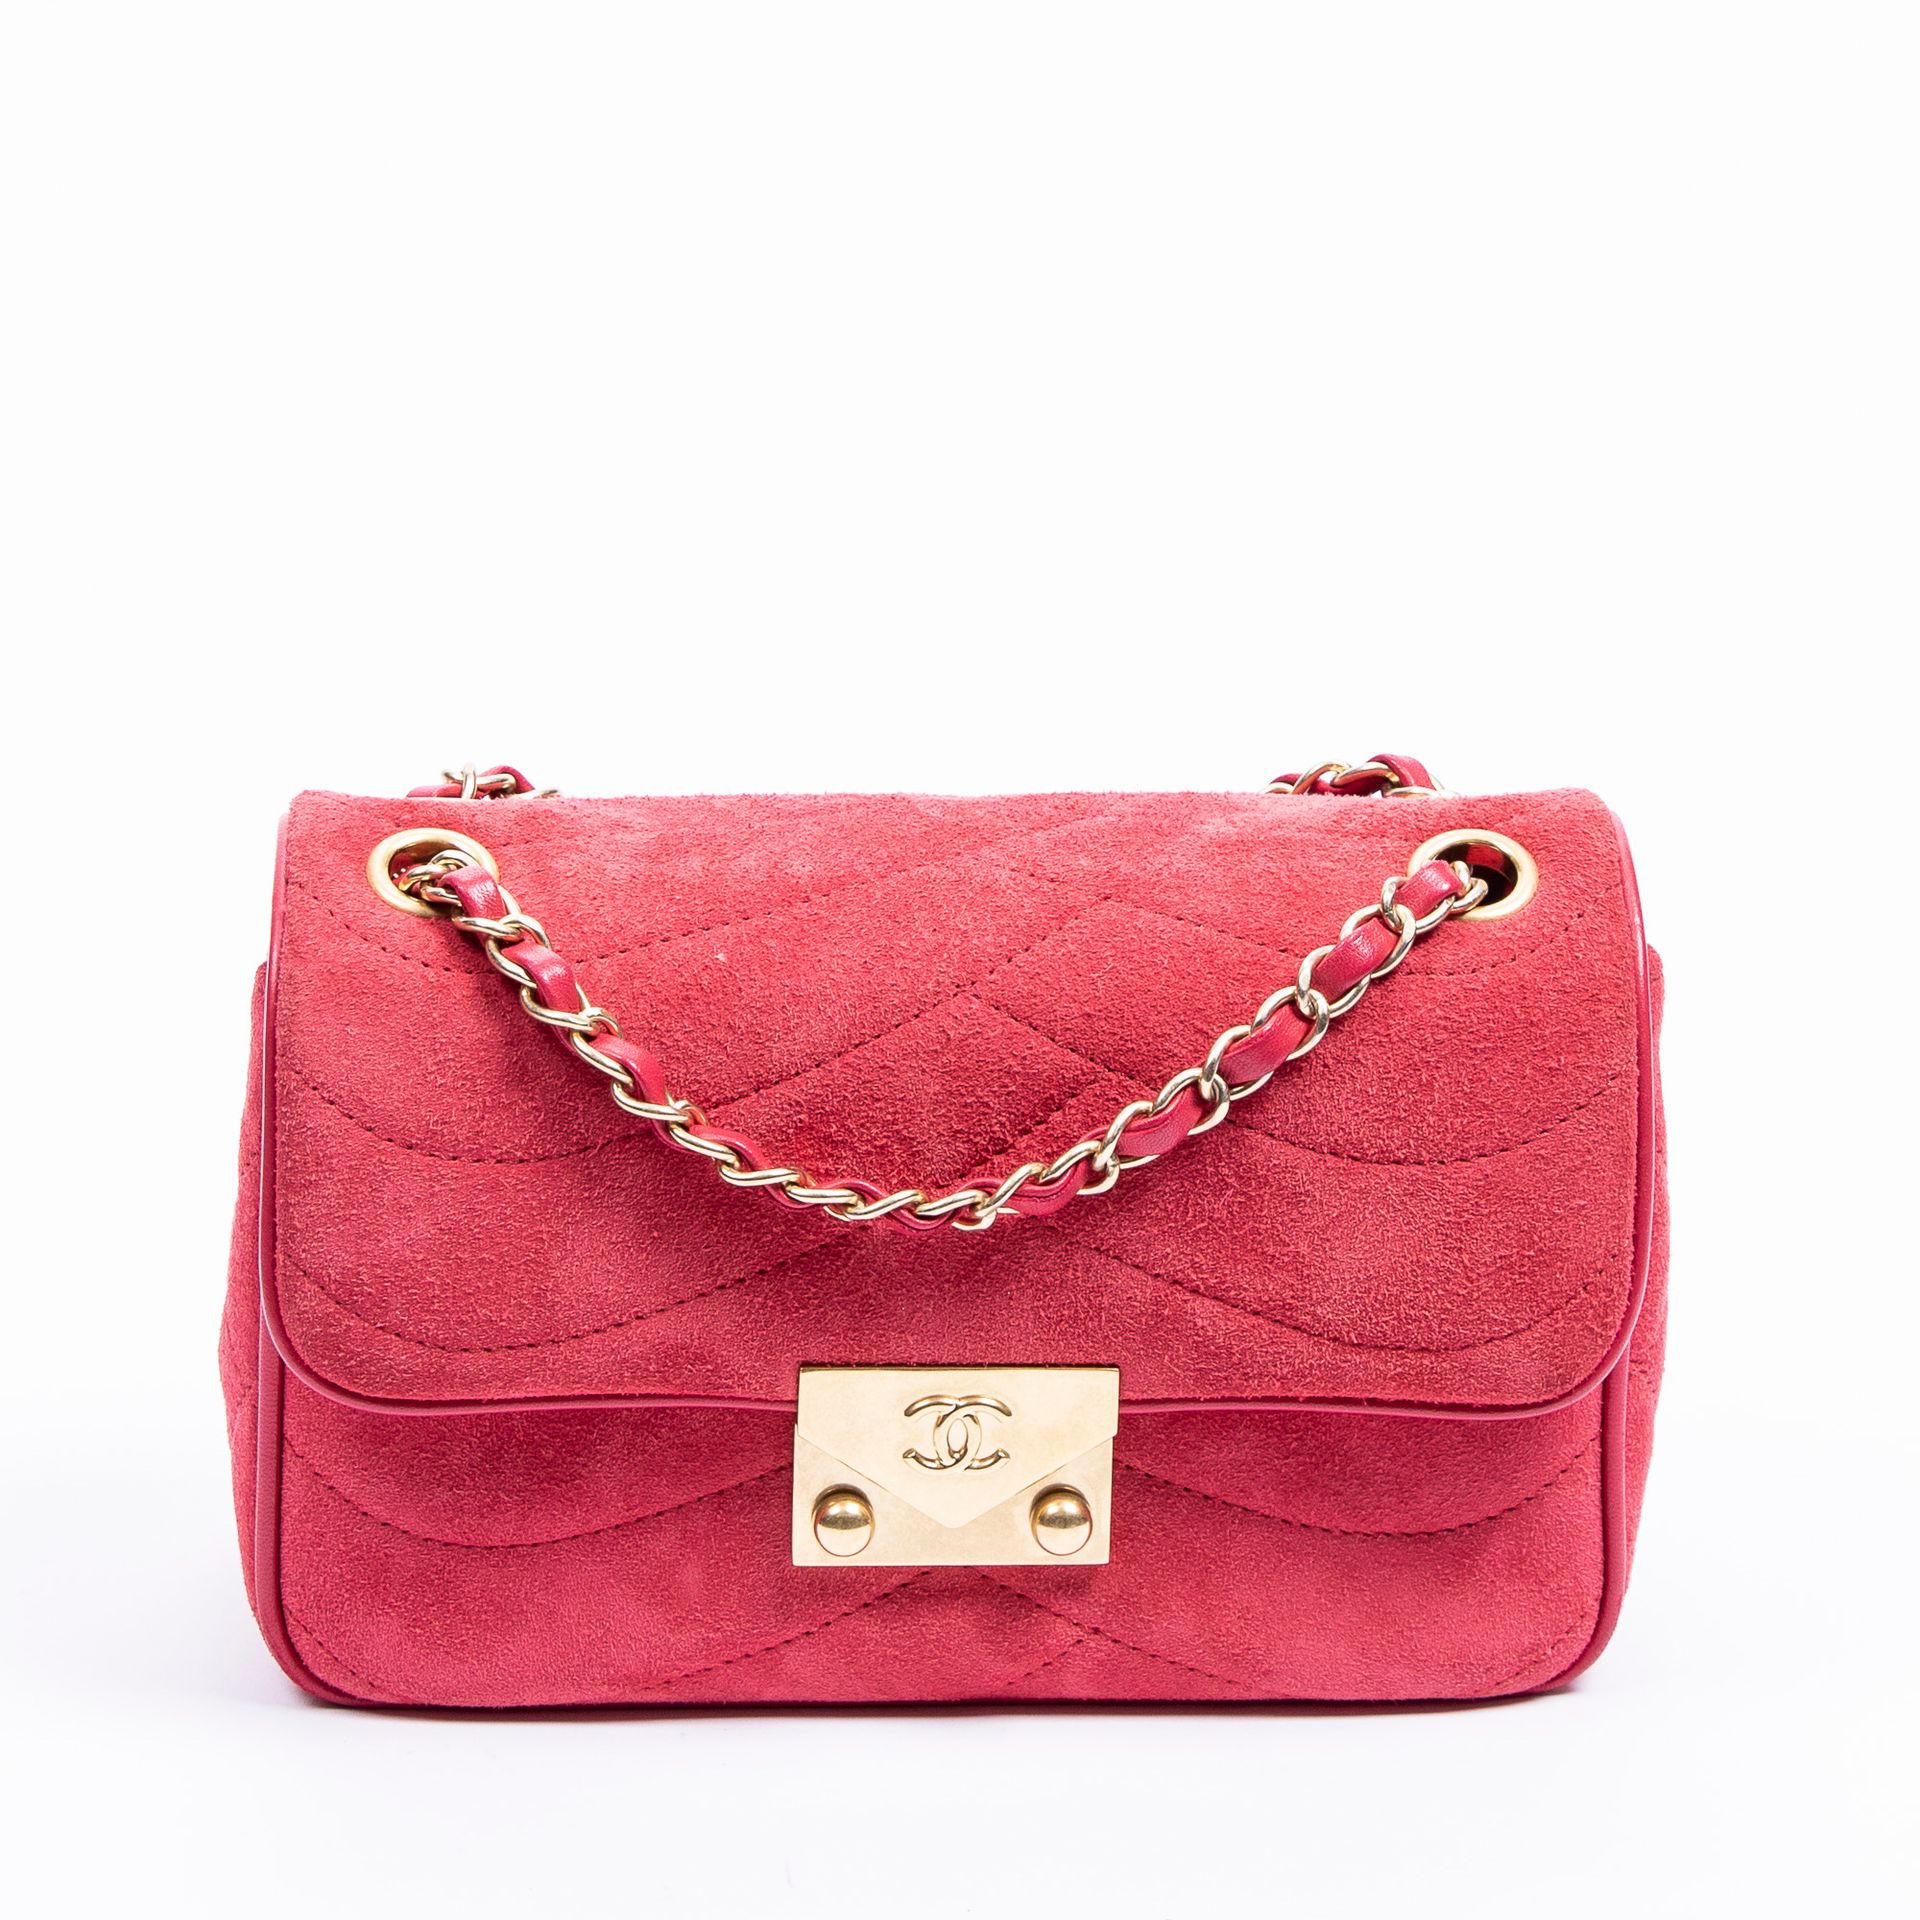 Chanel 香奈儿 - 天鹅绒和紫红色小羊皮的盒子大小的包 - 粉红色小羊皮内衬 - 链式肩带，可手提、肩背或斜挎 - 金色金属首饰 - 有卡片和真品编号 -&hellip;